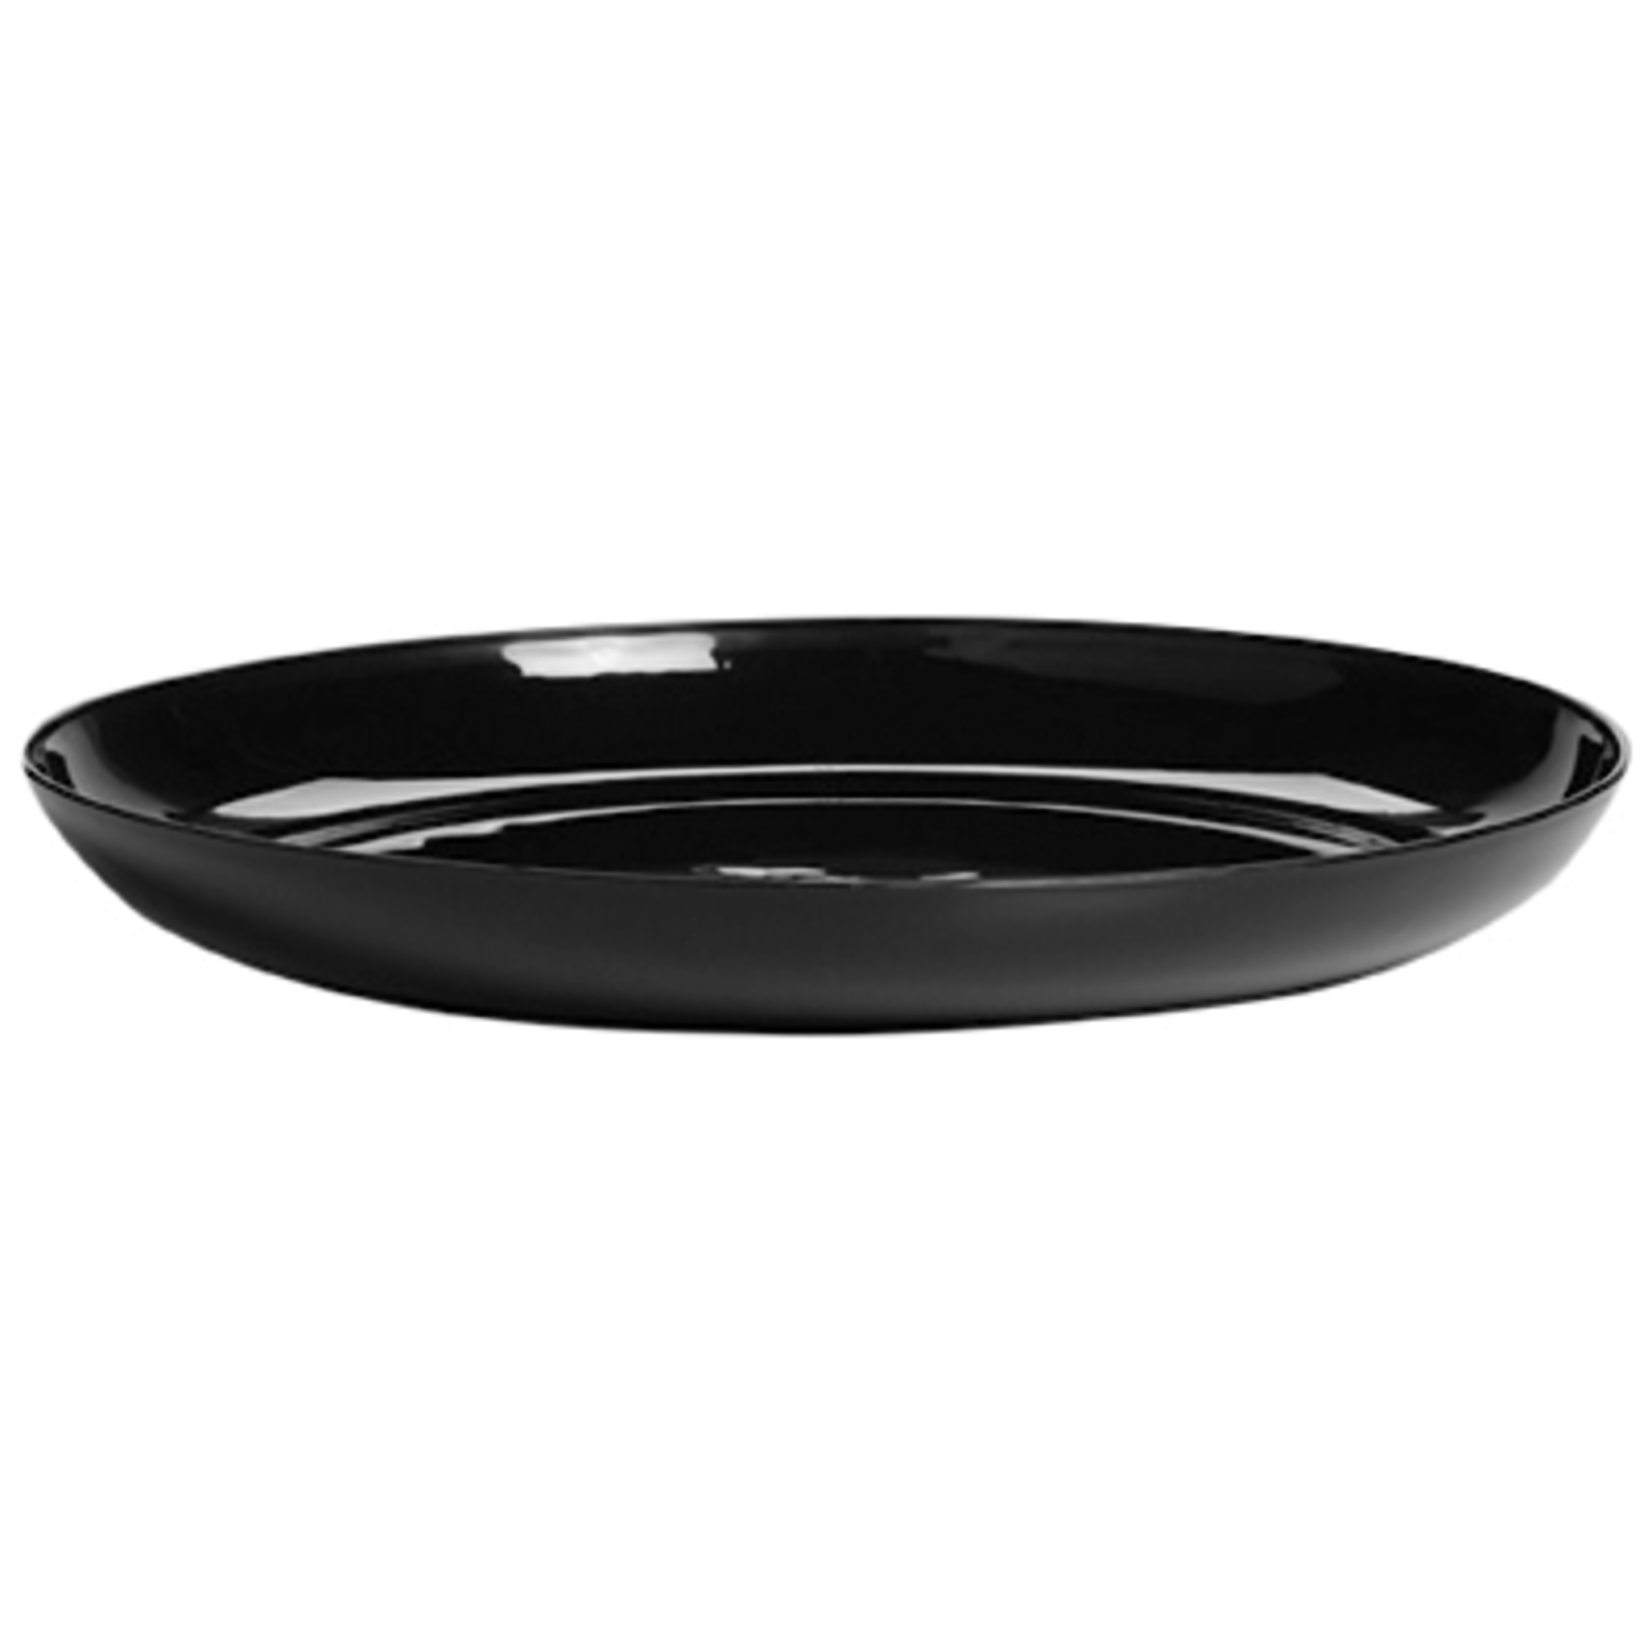 9"" Designer Dish - Black 99999b